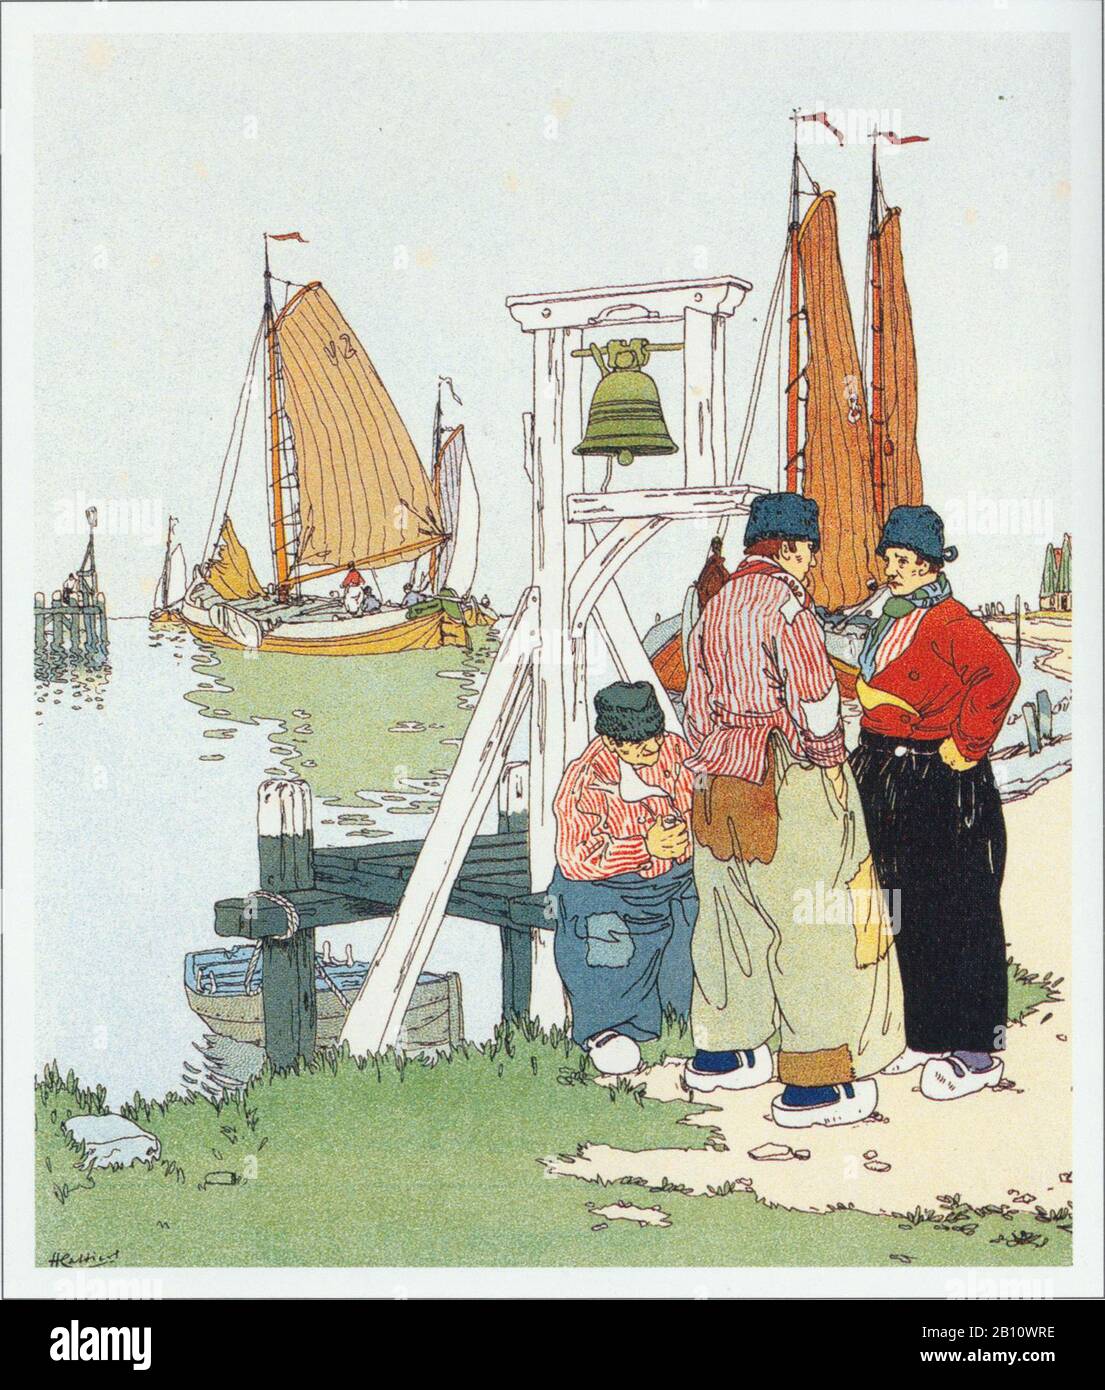 Volendam haven b - Ilustración de Henri cassers (1858 - 1944) Foto de stock